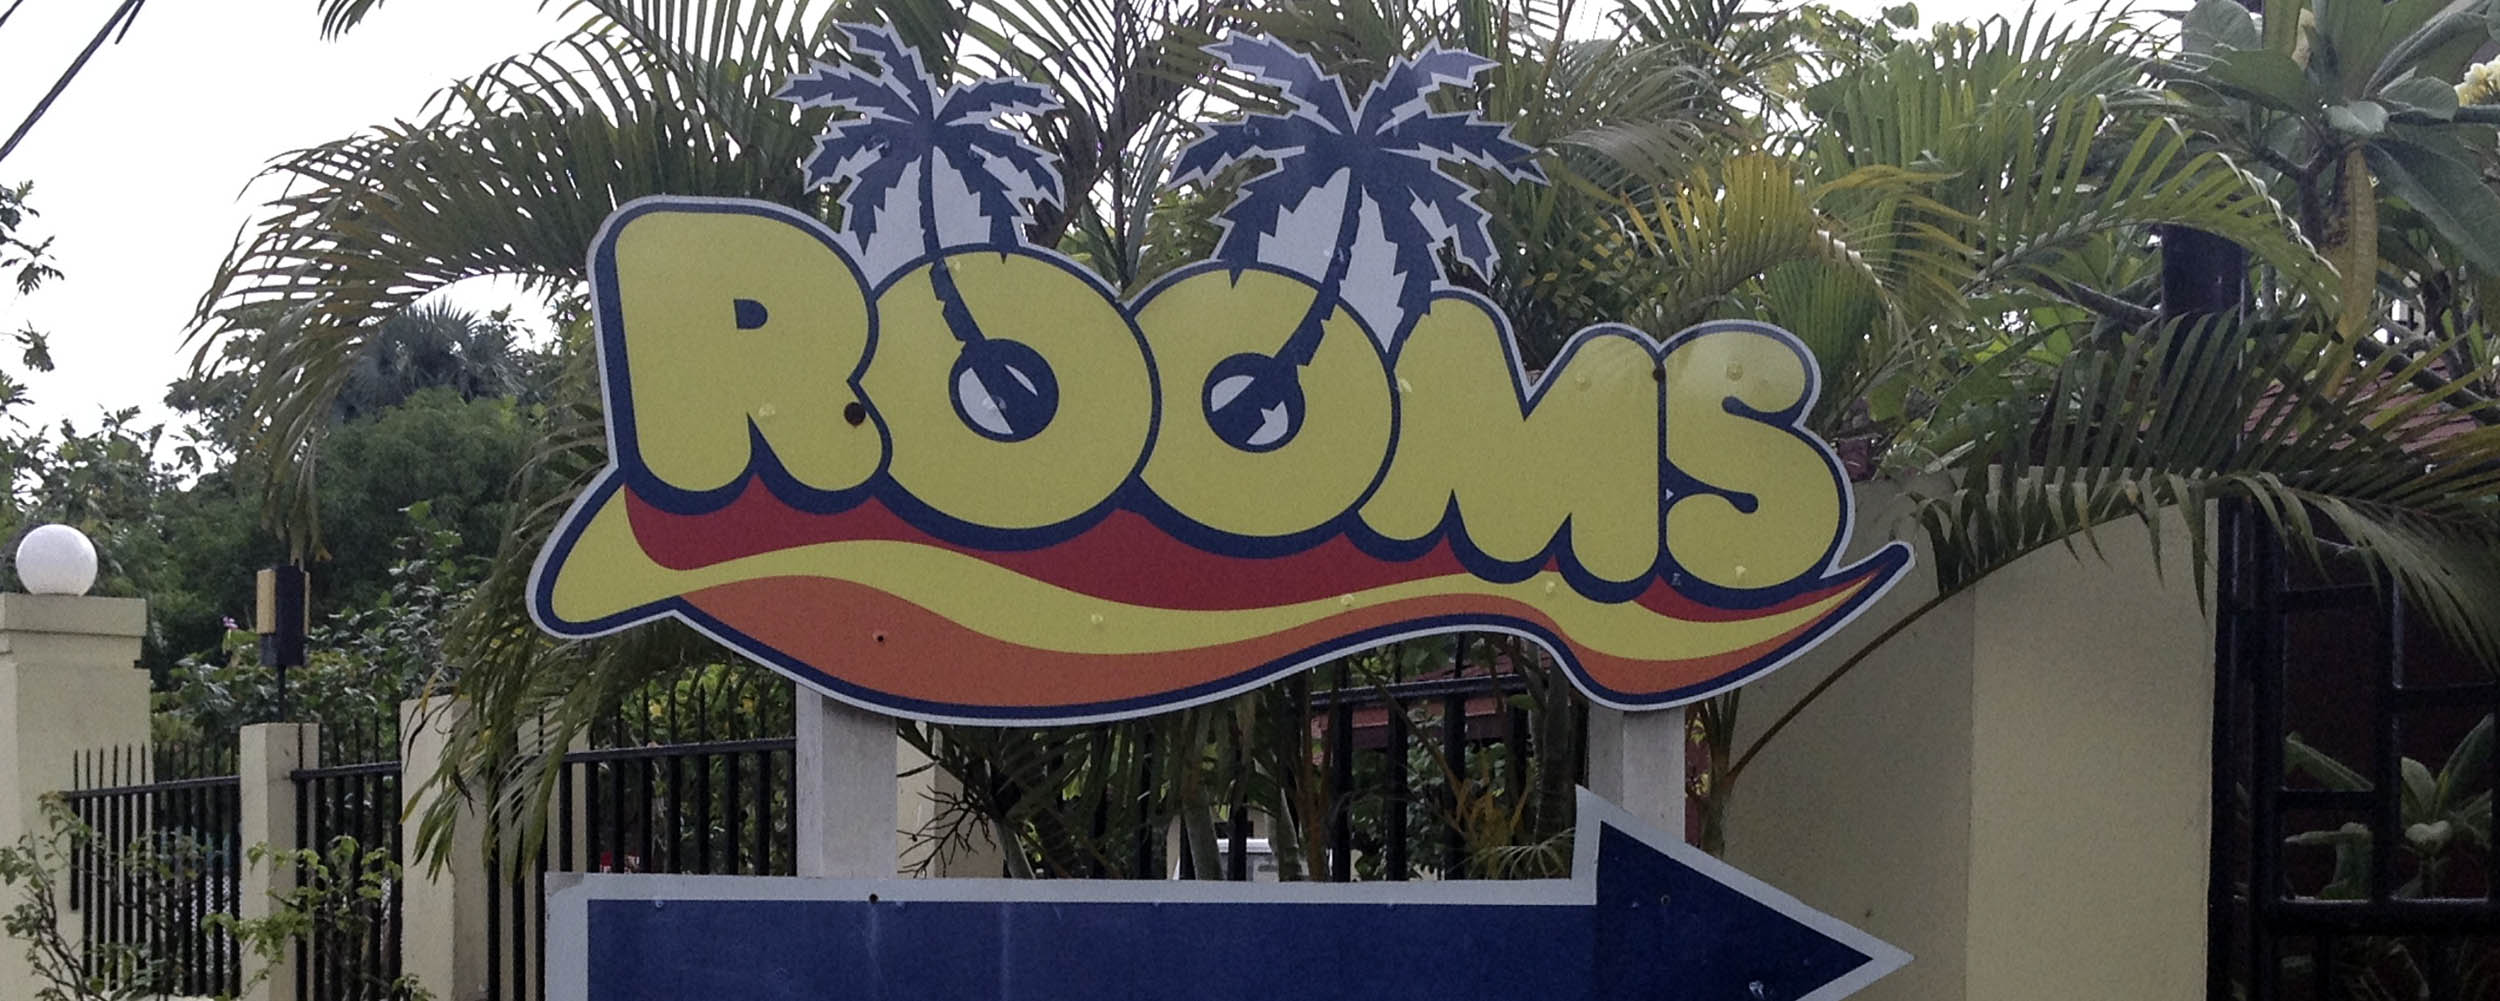 Rooms - Negril Jamaica